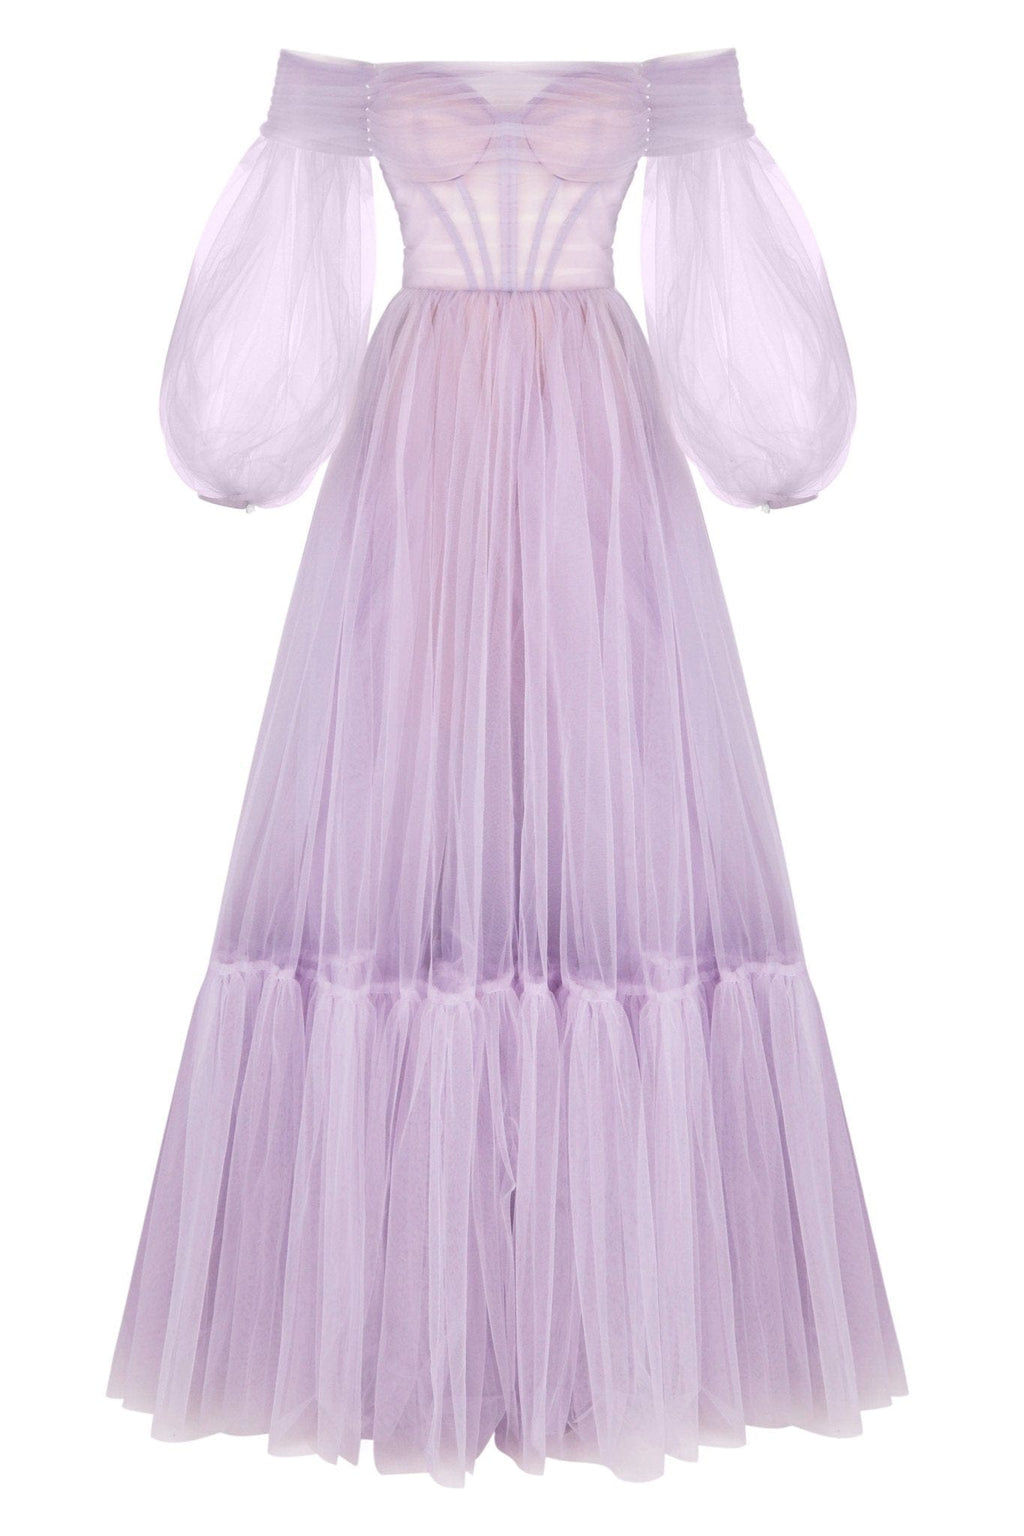 Purple Illusion Bodice Sleeved Mermaid Prom Dress - Xdressy